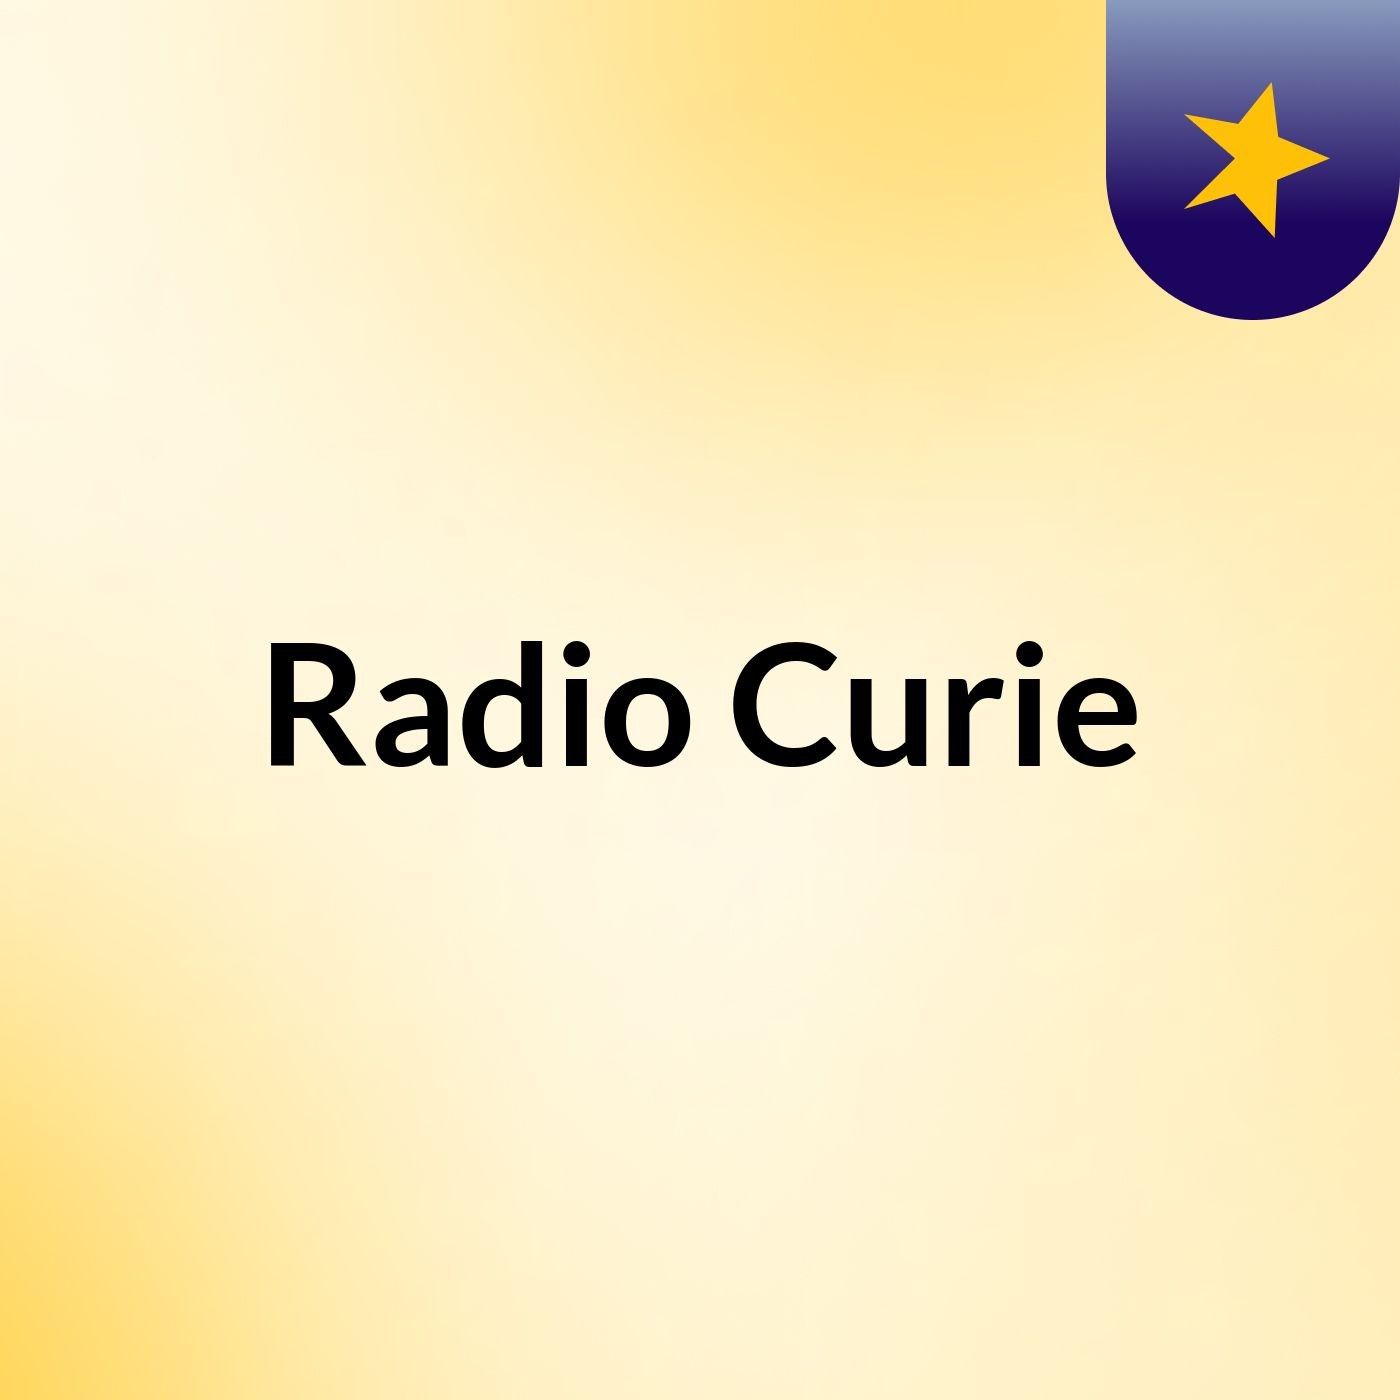 Radio Curie